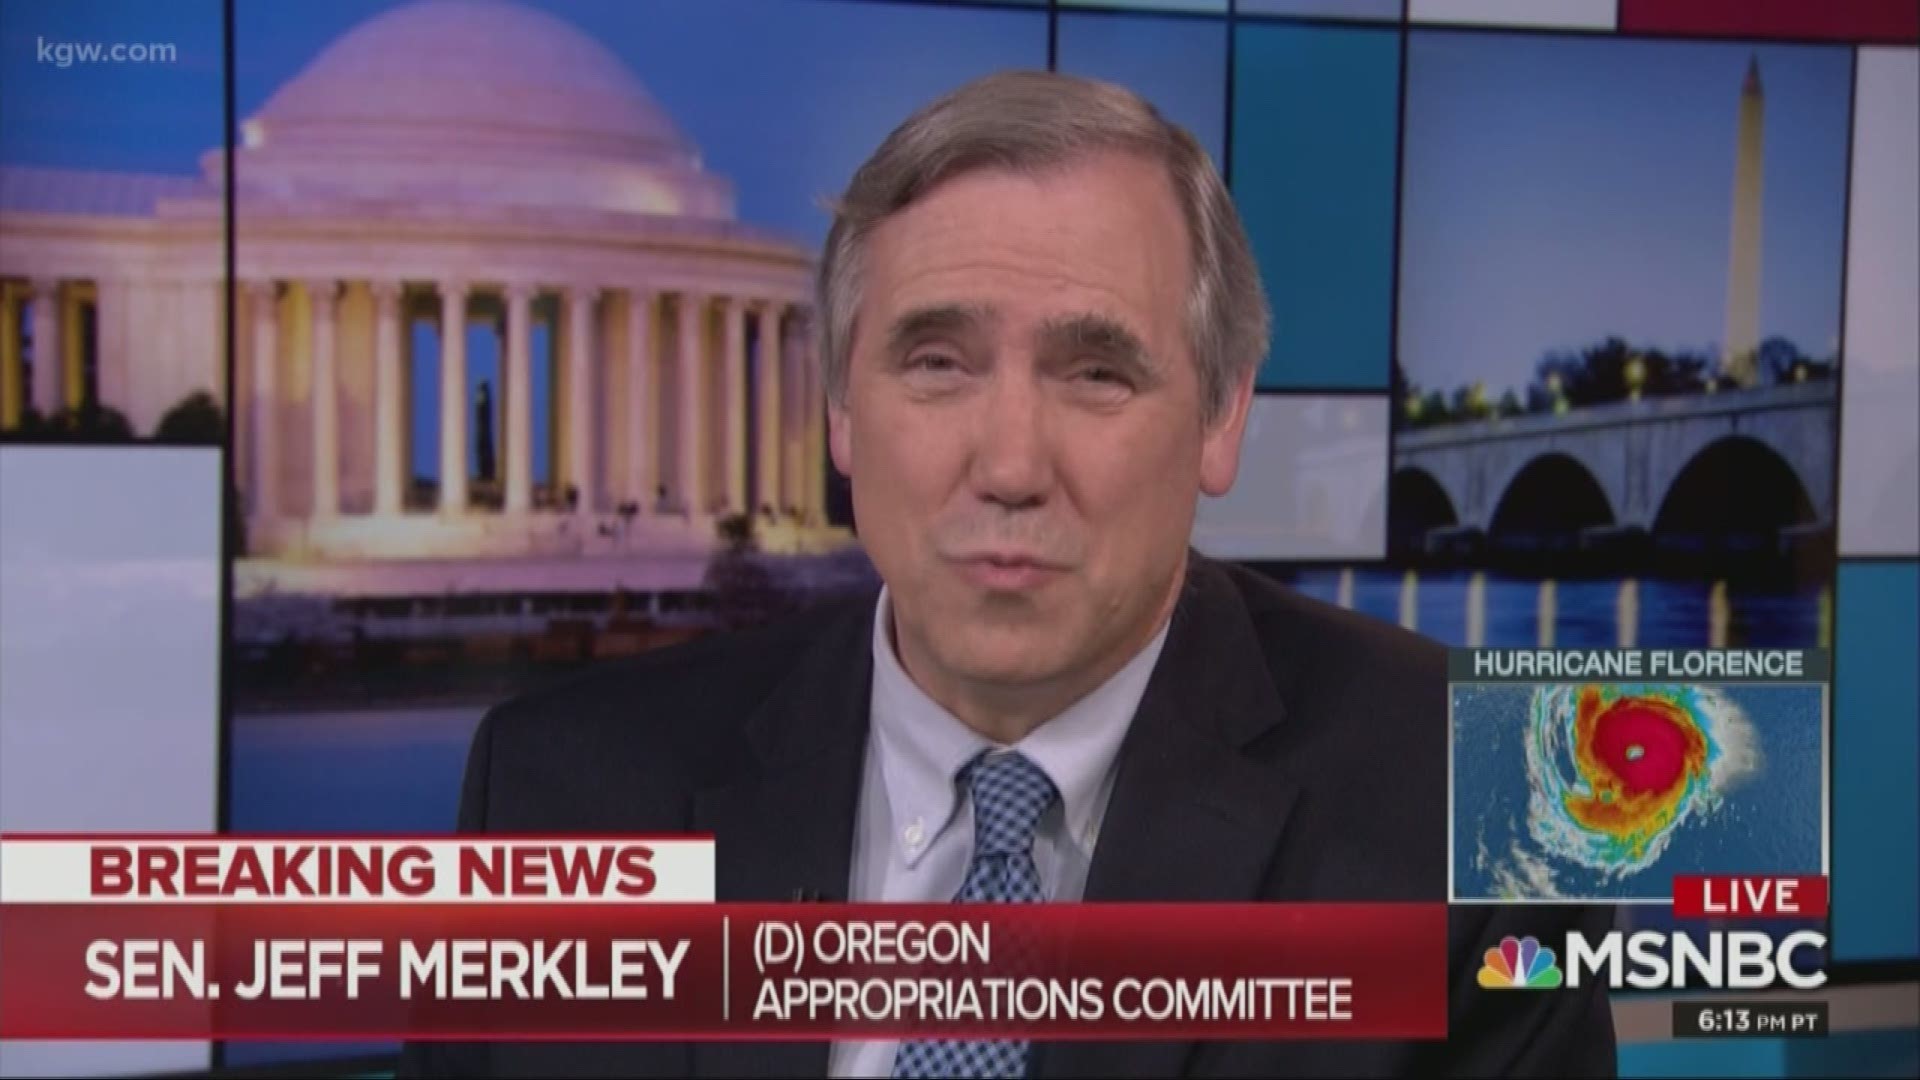 Merkley: Docs show money transferred from FEMA to ICE